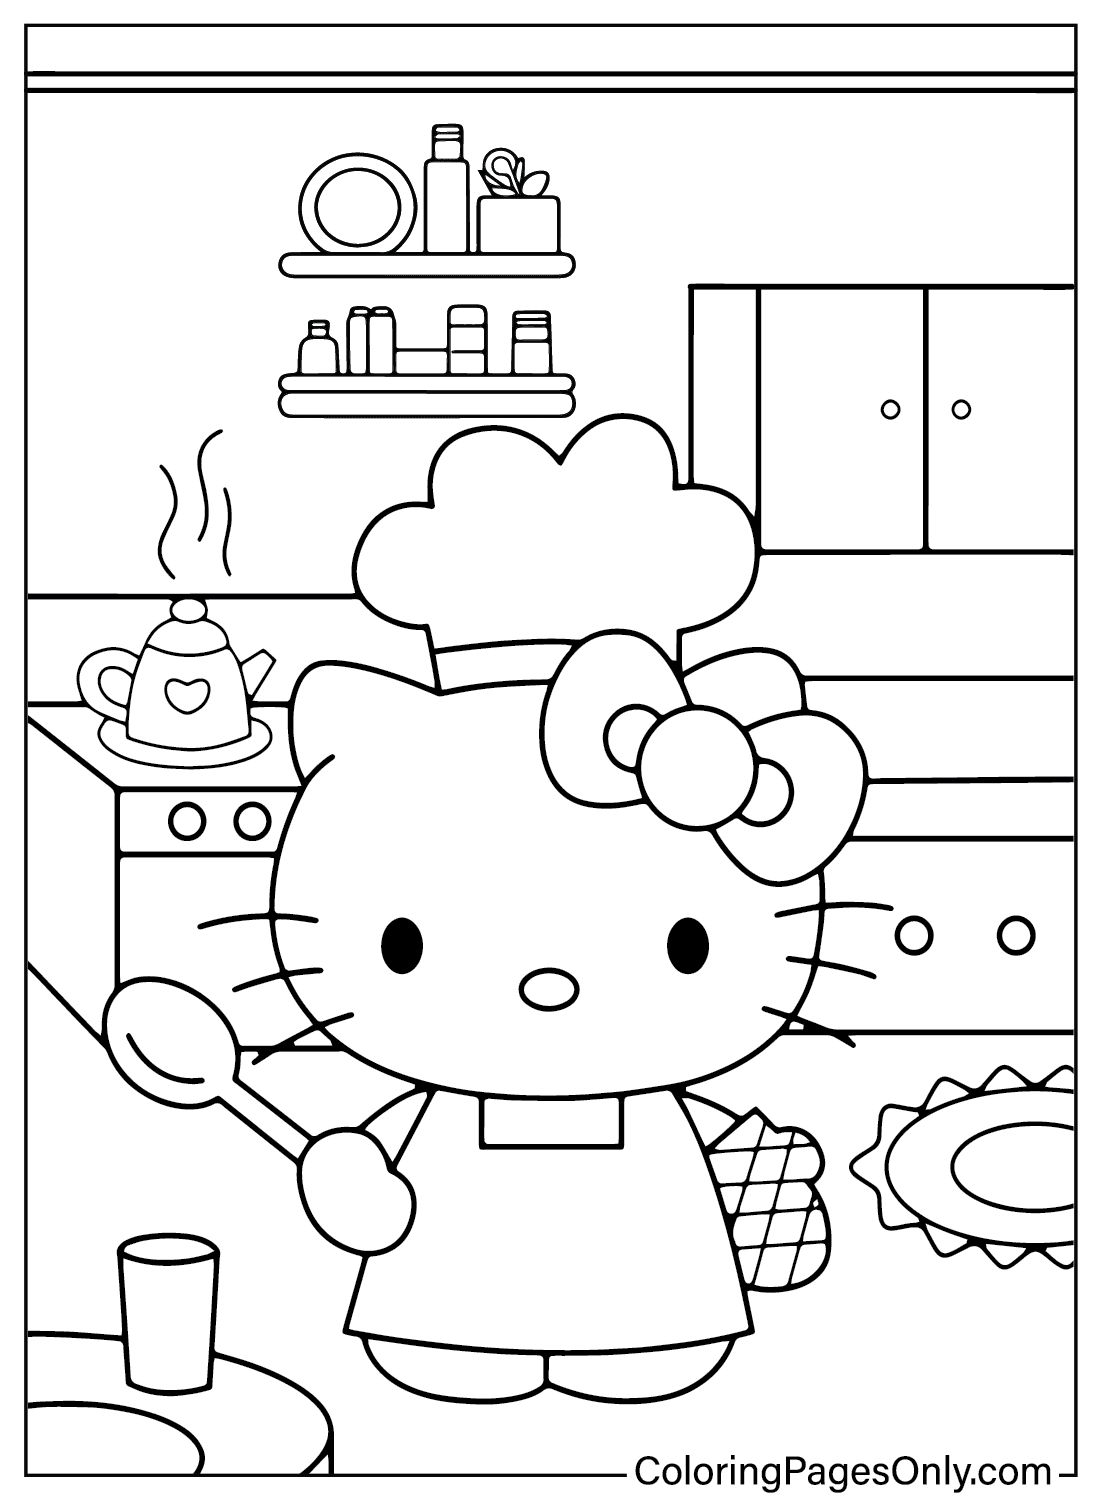 Página para colorir da Hello Kitty em PDF